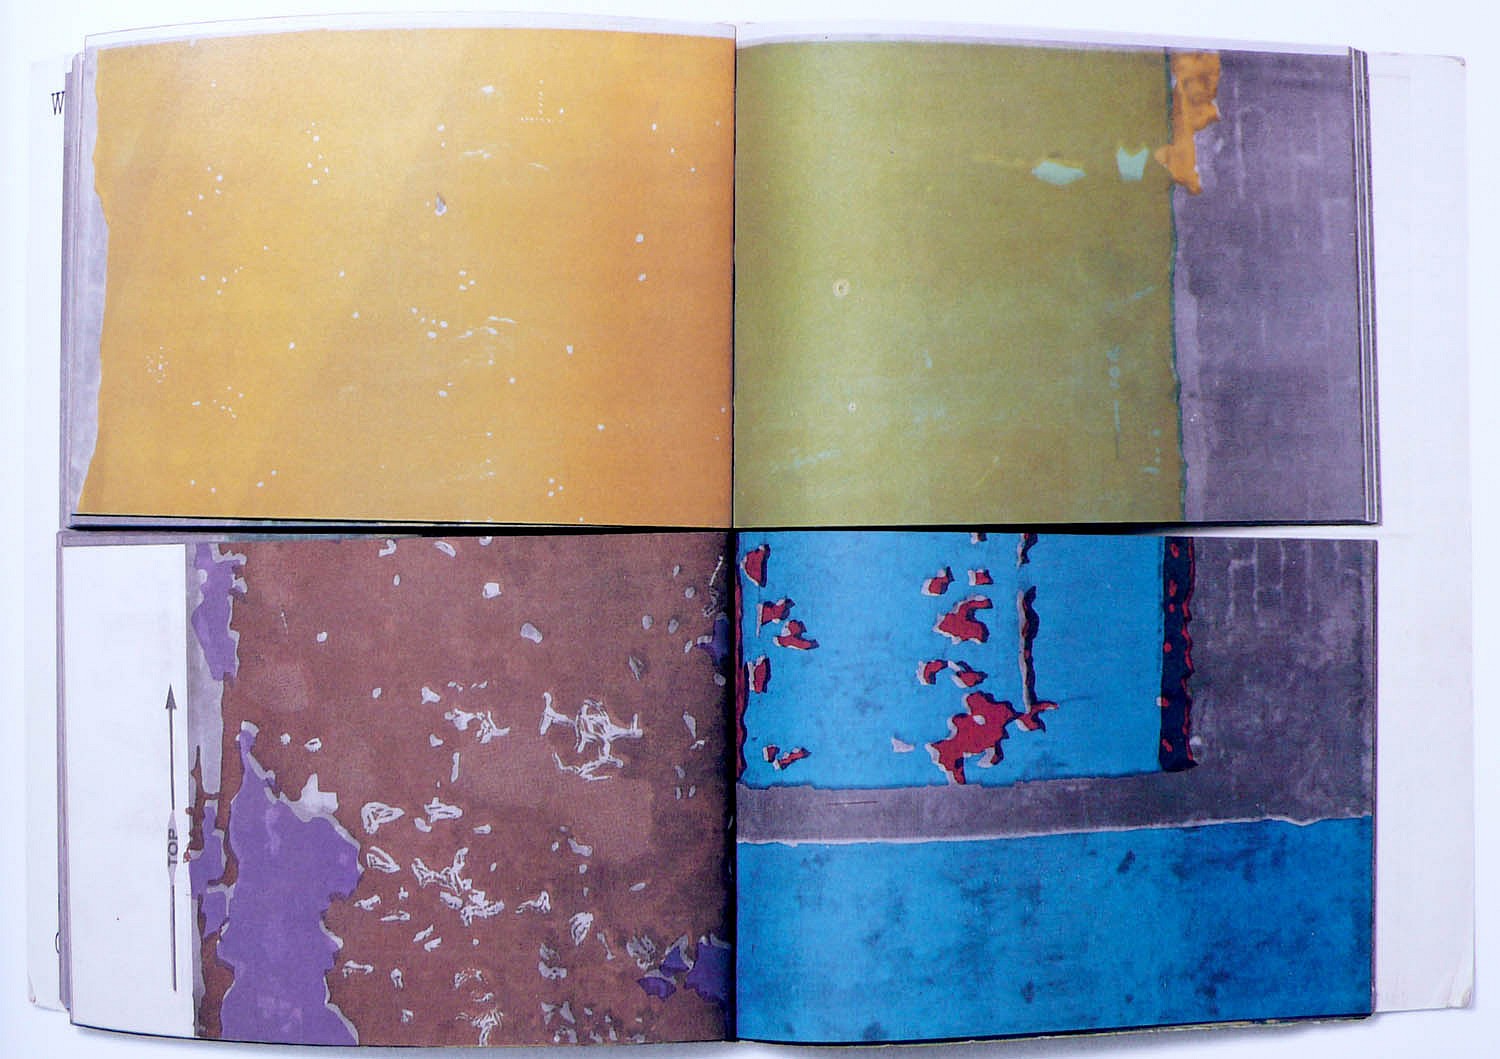 Zucker | Matta-Clark | Books paper Gordon 1973 Art | Walls